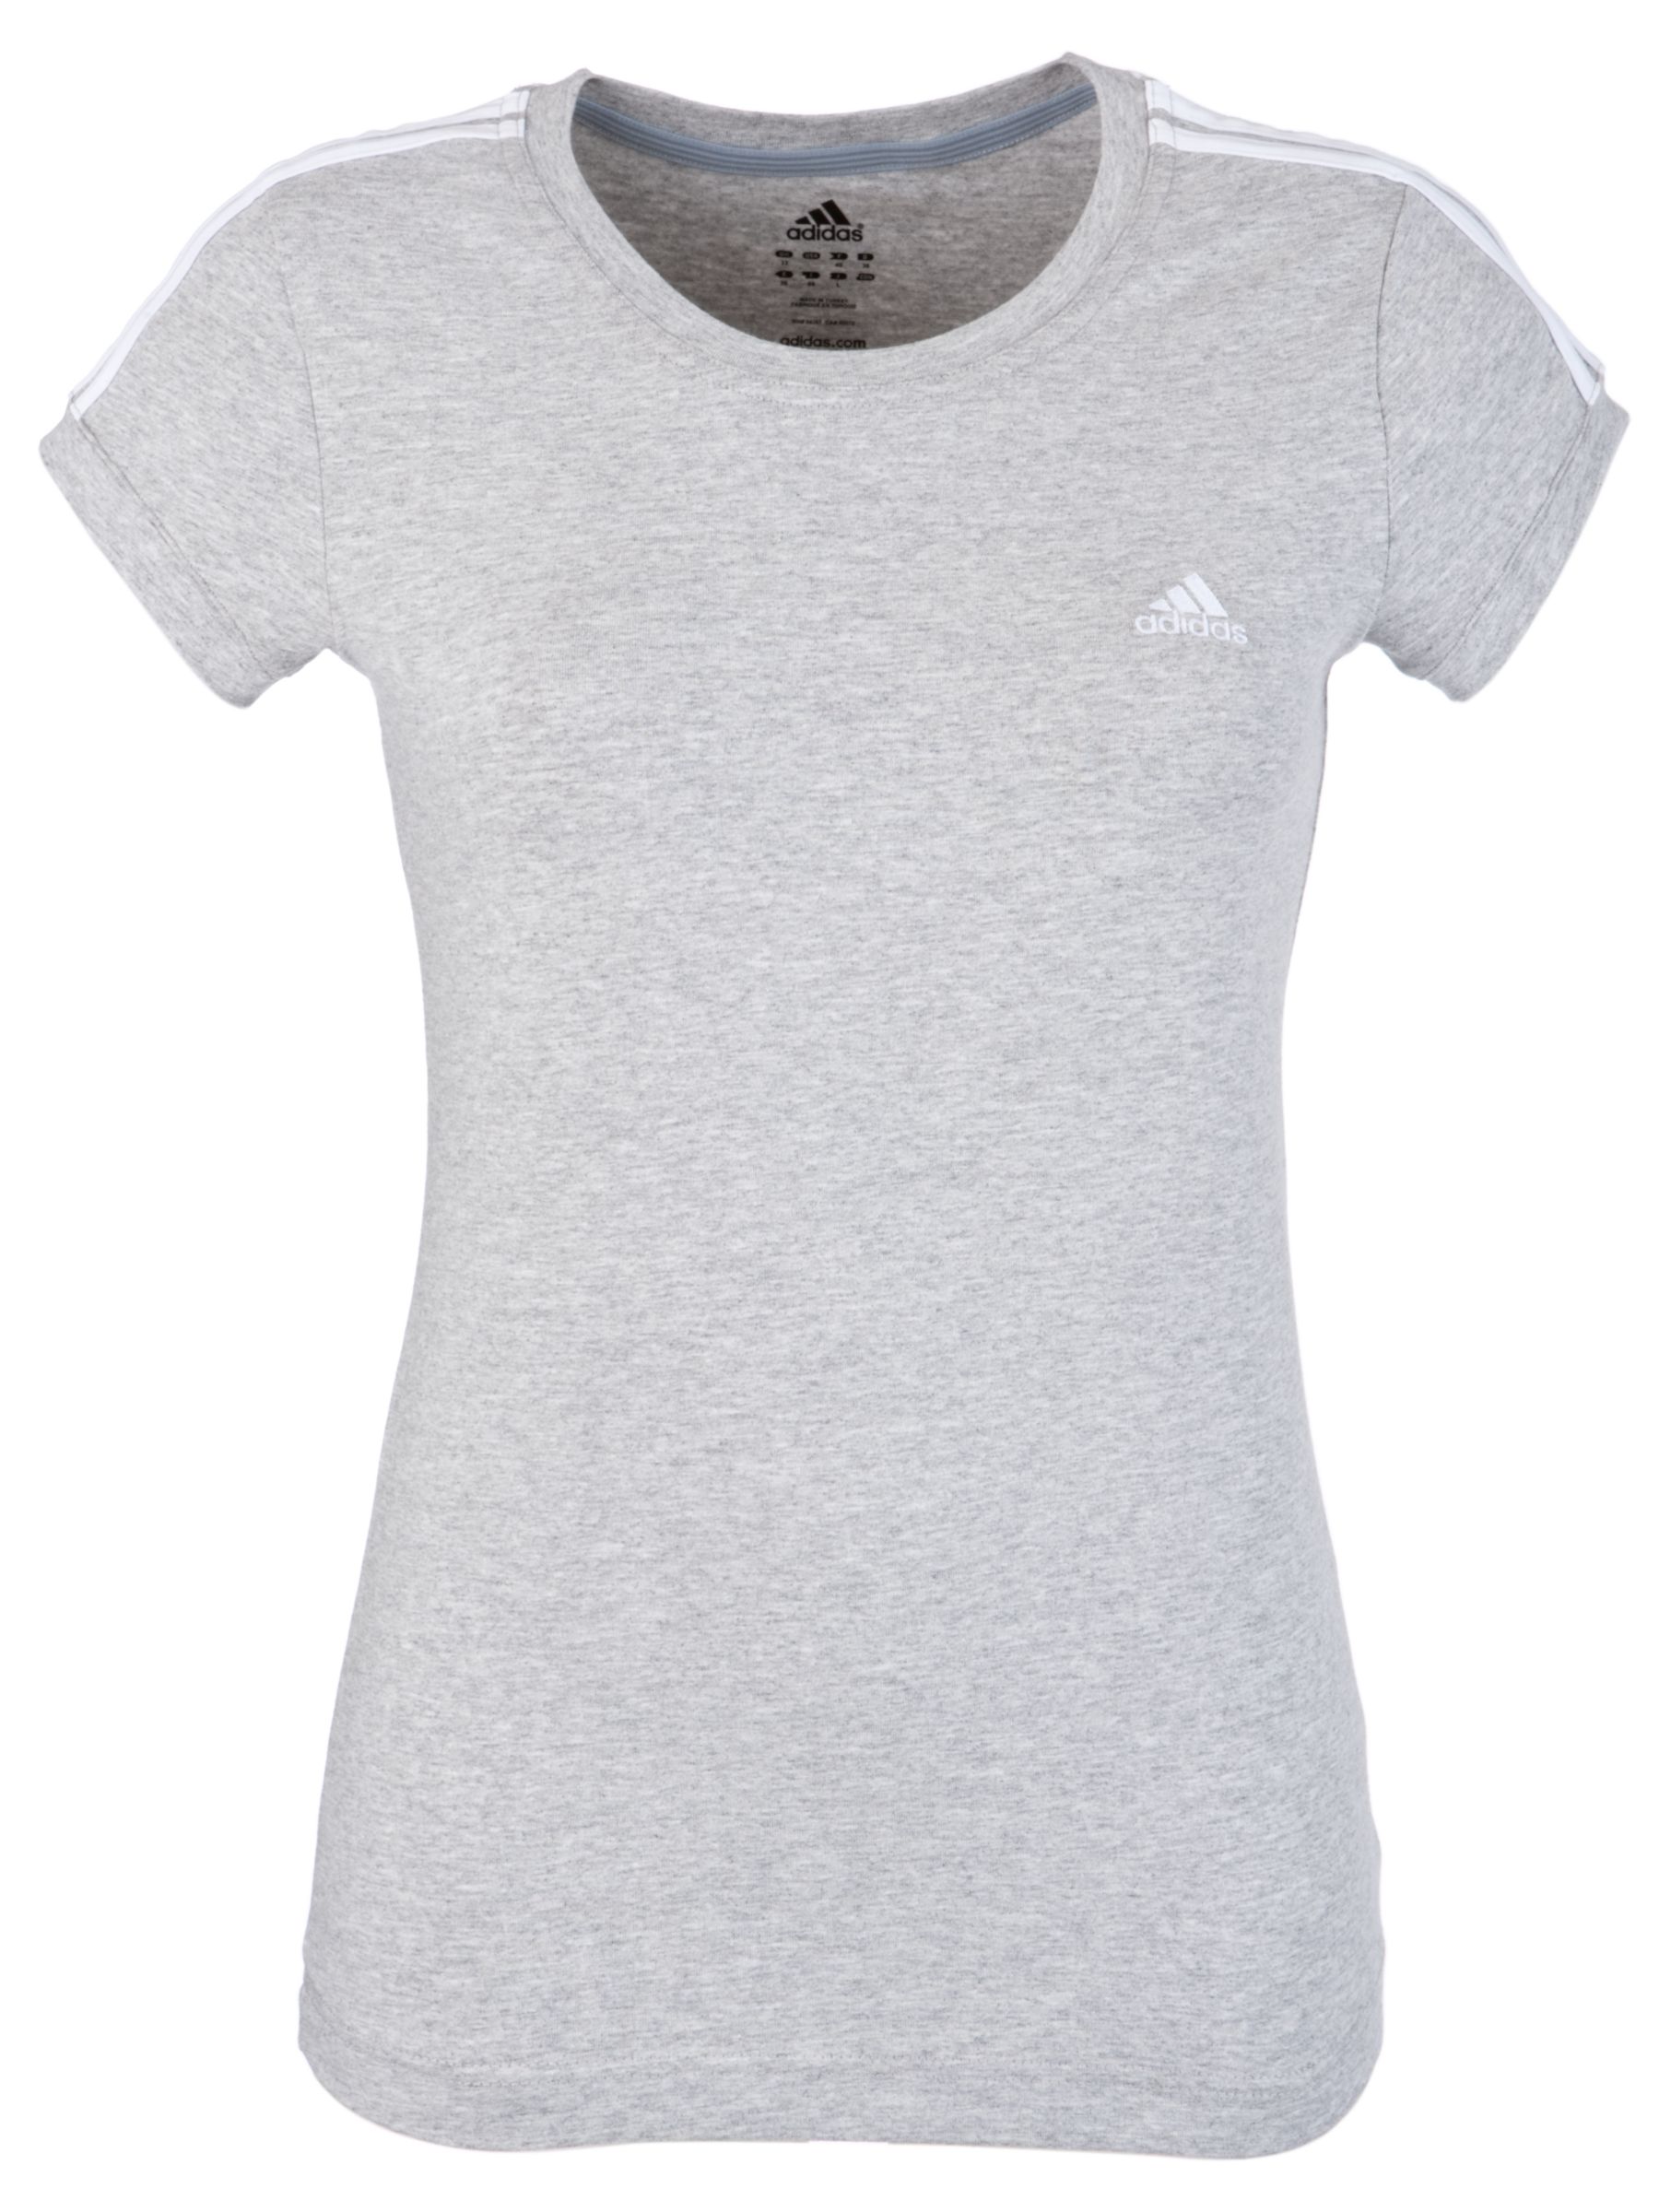 Adidas Essential 3 Stripe T-Shirt, Grey